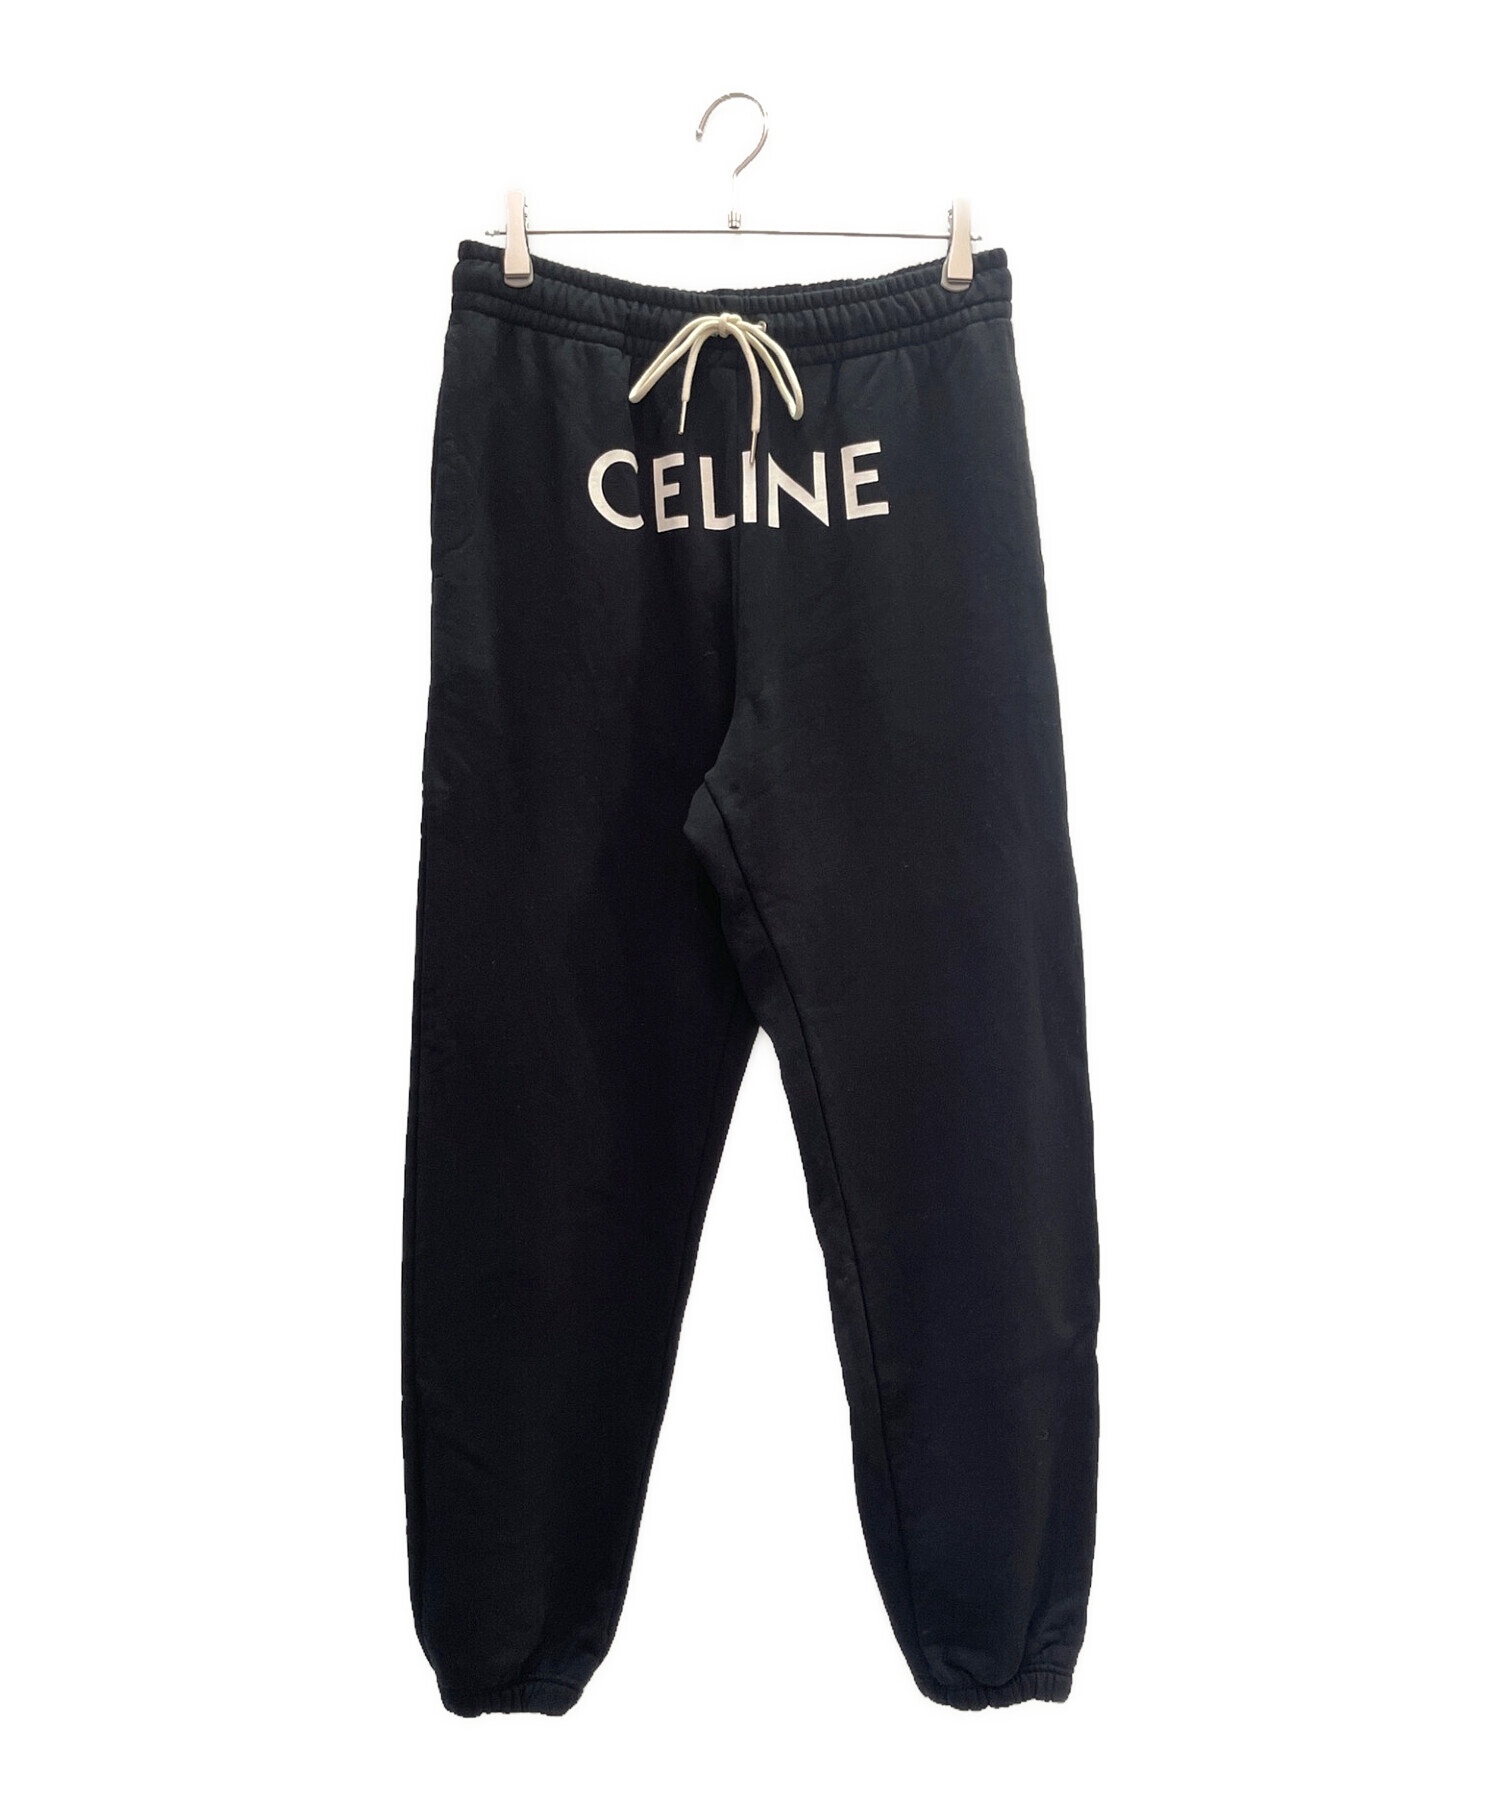 約36cm☆Celine セリーヌ ブラック パンツ